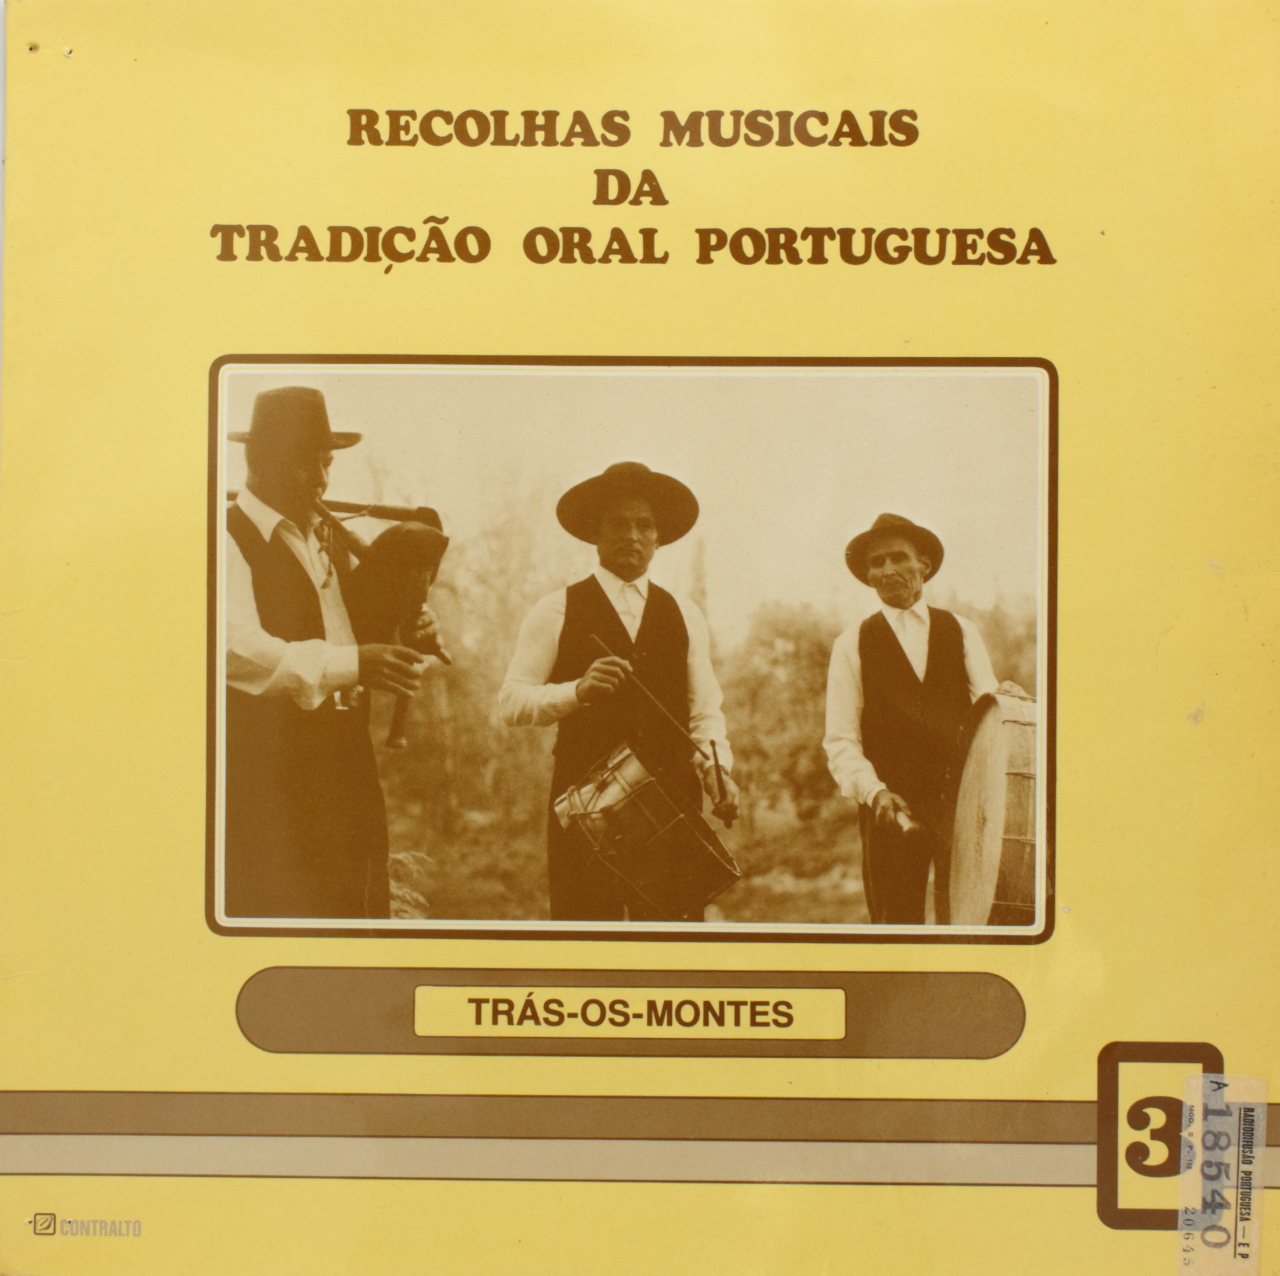 Recolhas musicais da tradição oral portuguesa: Trás-Os-Montes e Alentejo/Algarve